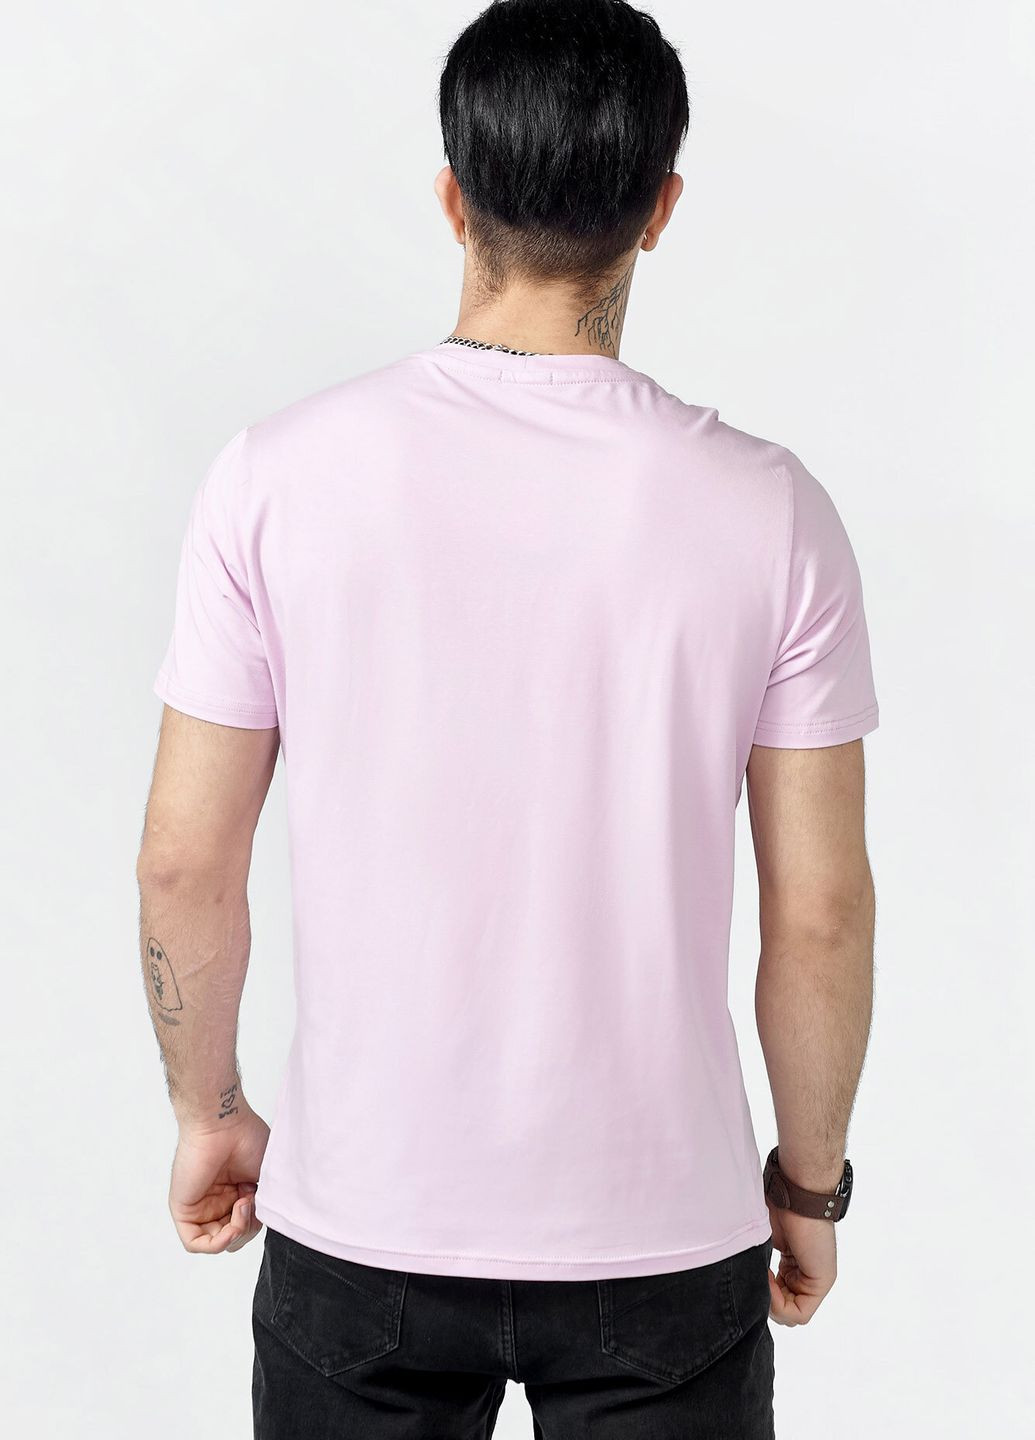 Розовая футболка lucas герб_yellowblue Gen